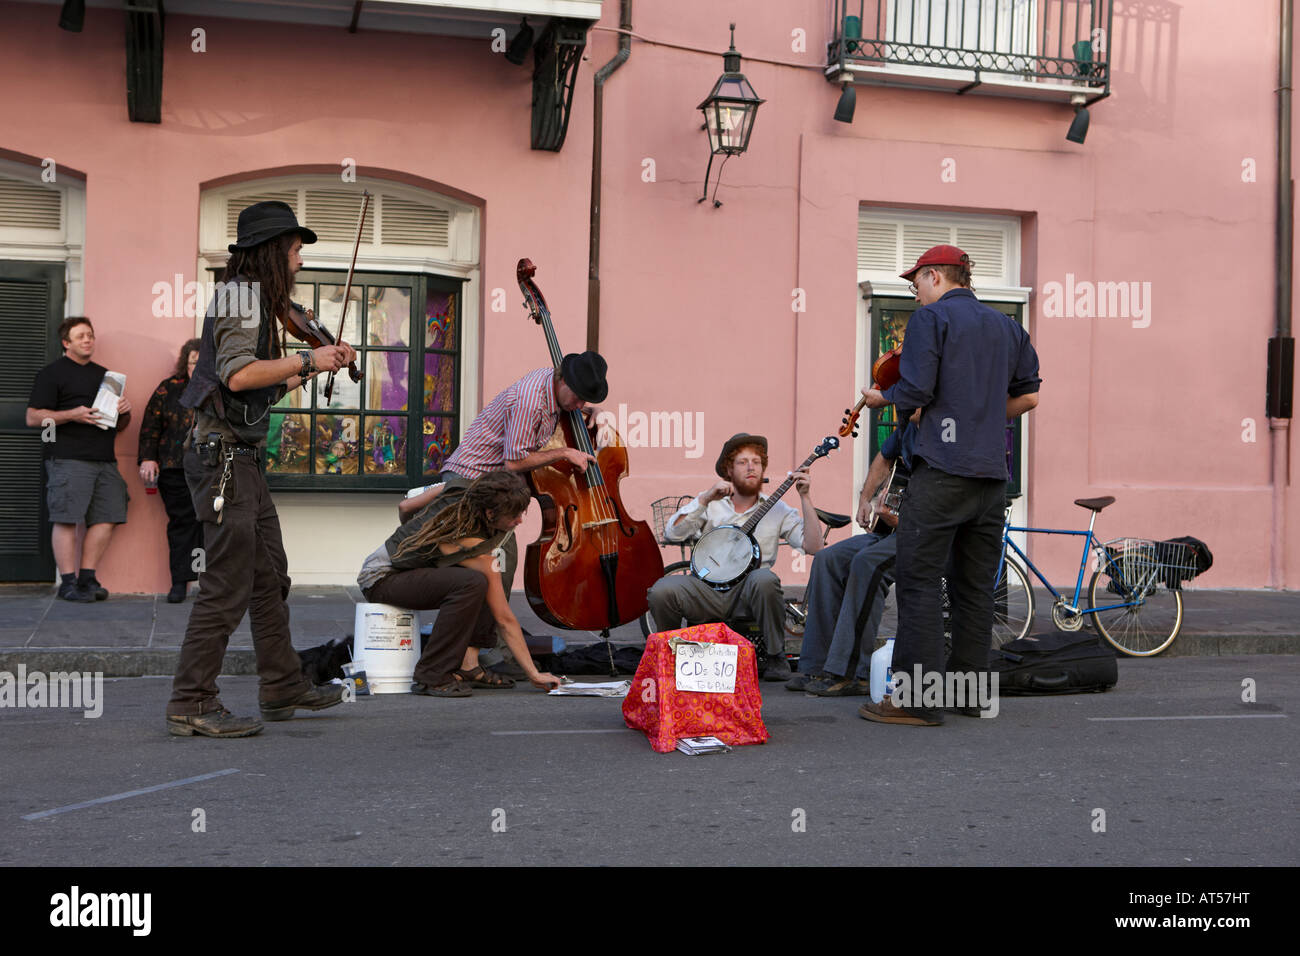 Un groupe de musiciens de rue qui se produisent dans le quartier français.La Nouvelle-Orléans, Louisiane, États-Unis. Banque D'Images